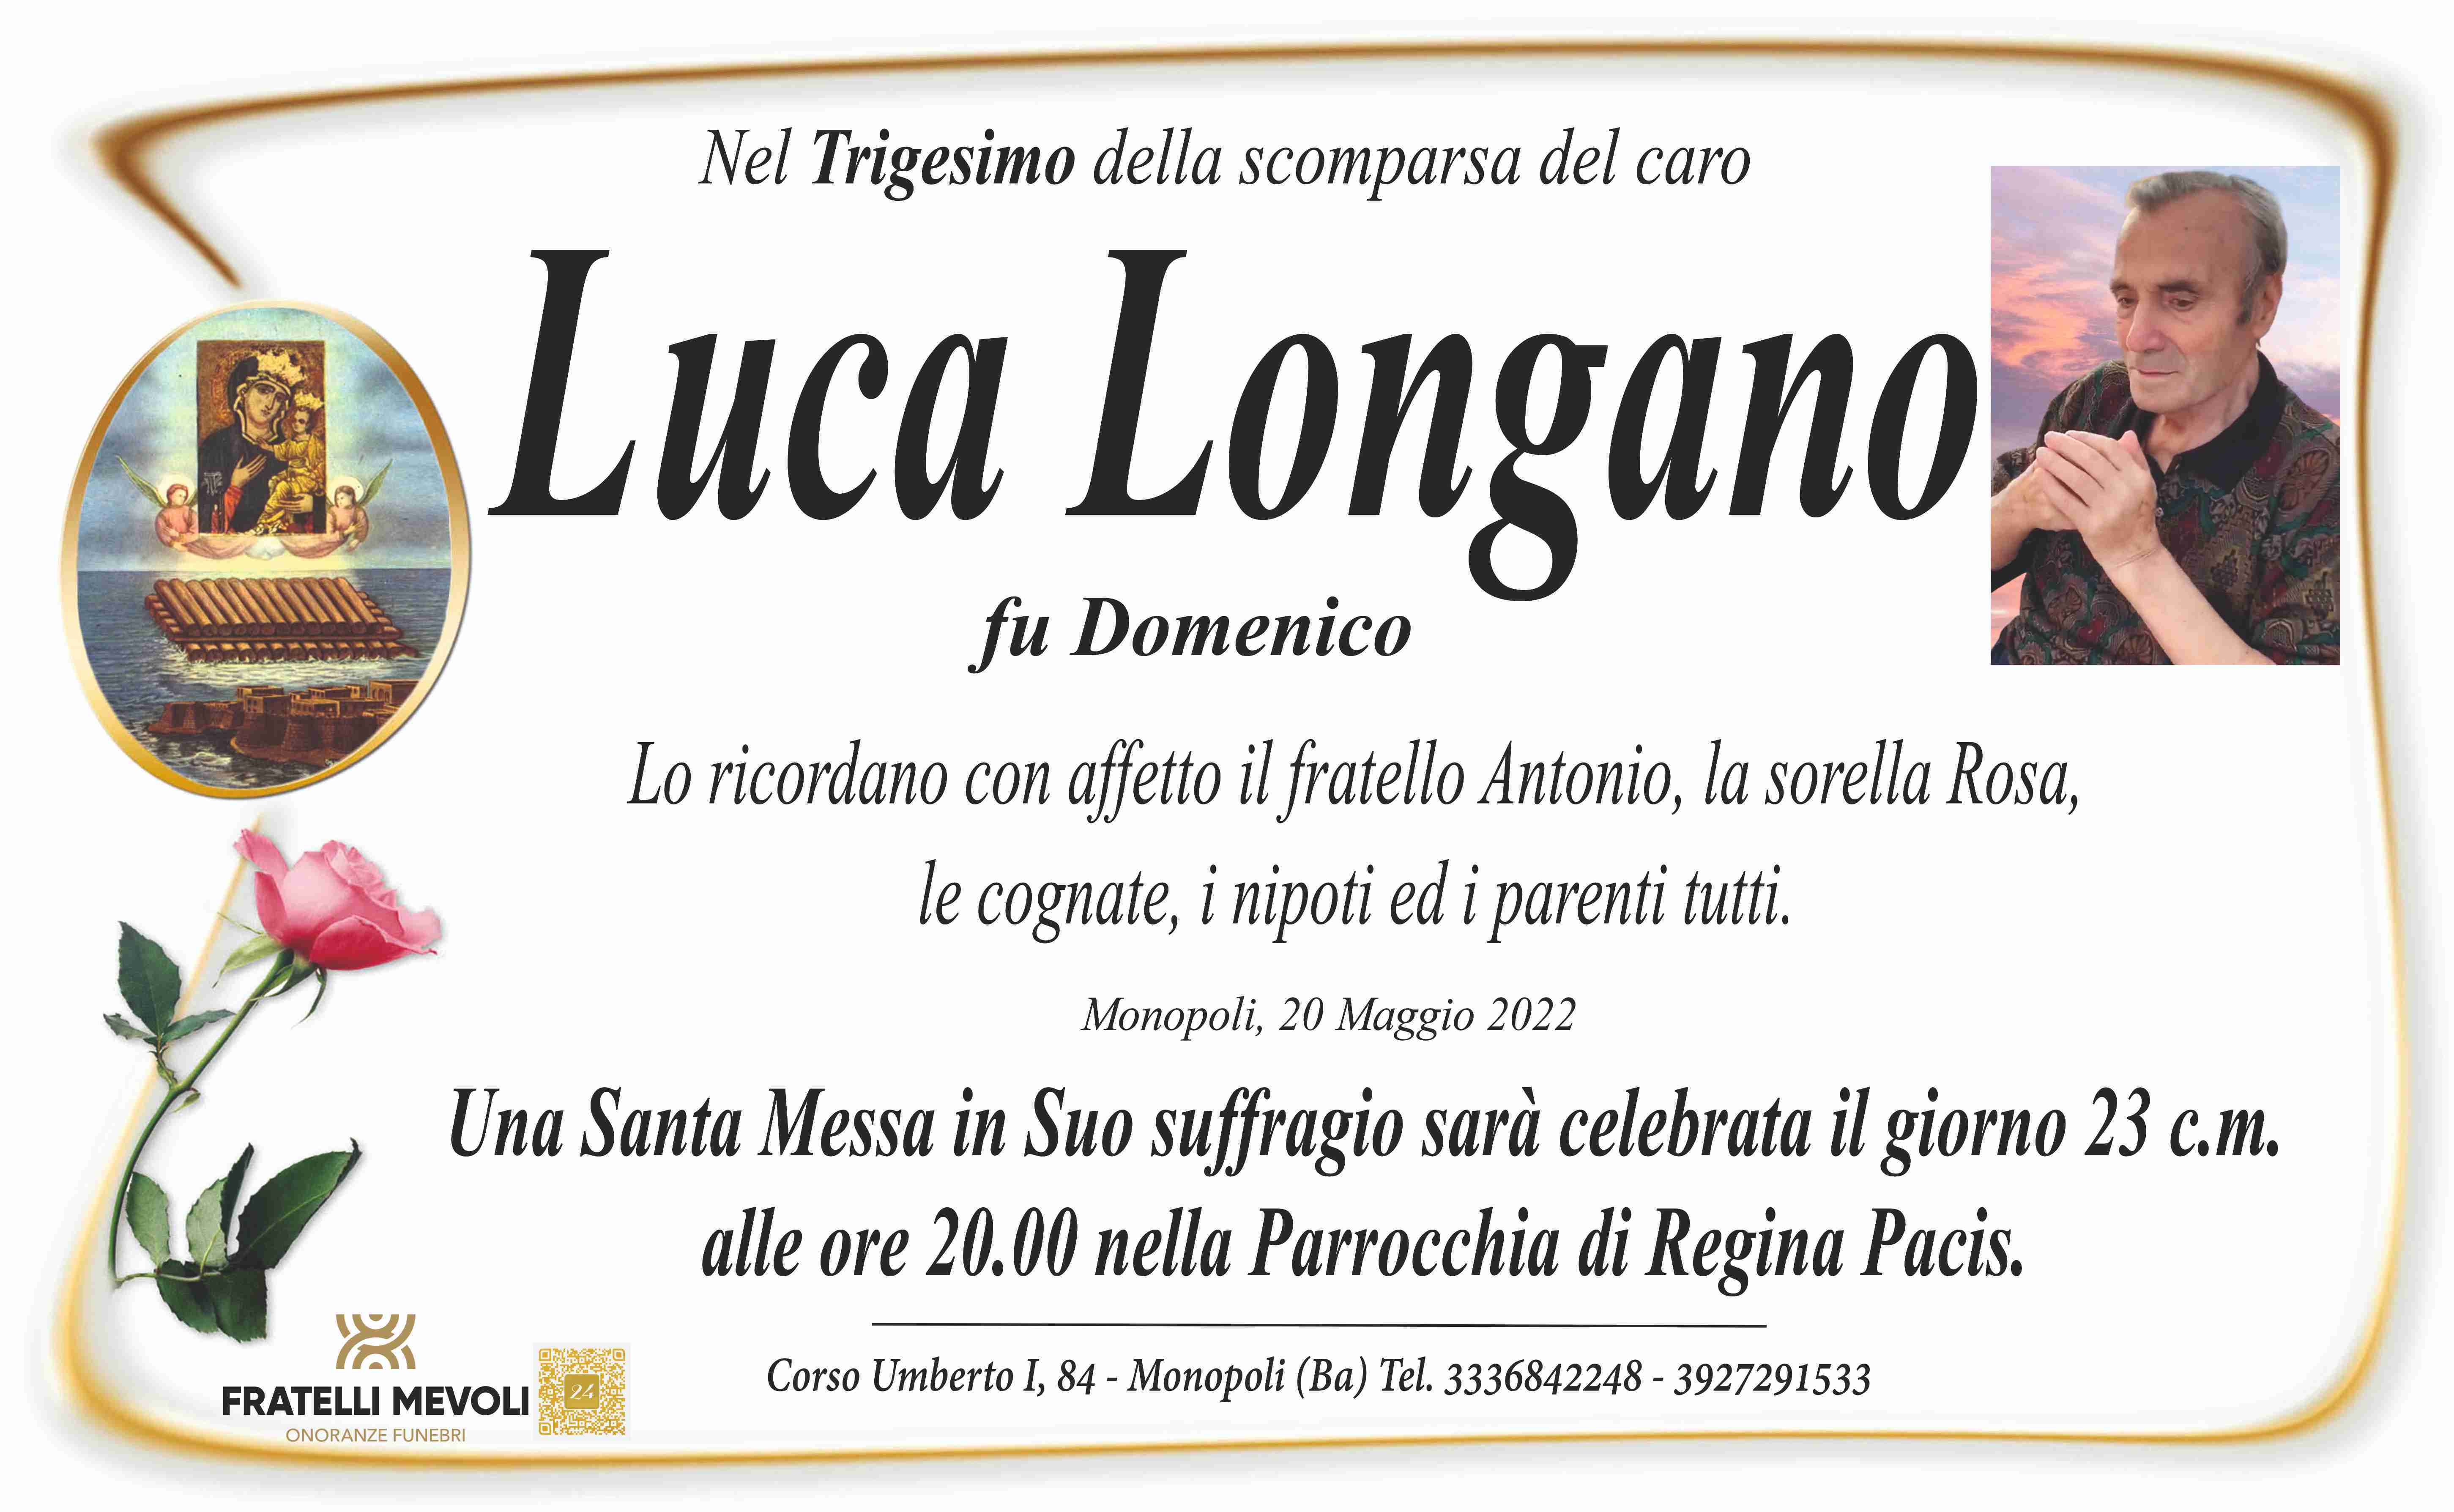 Luca Longano